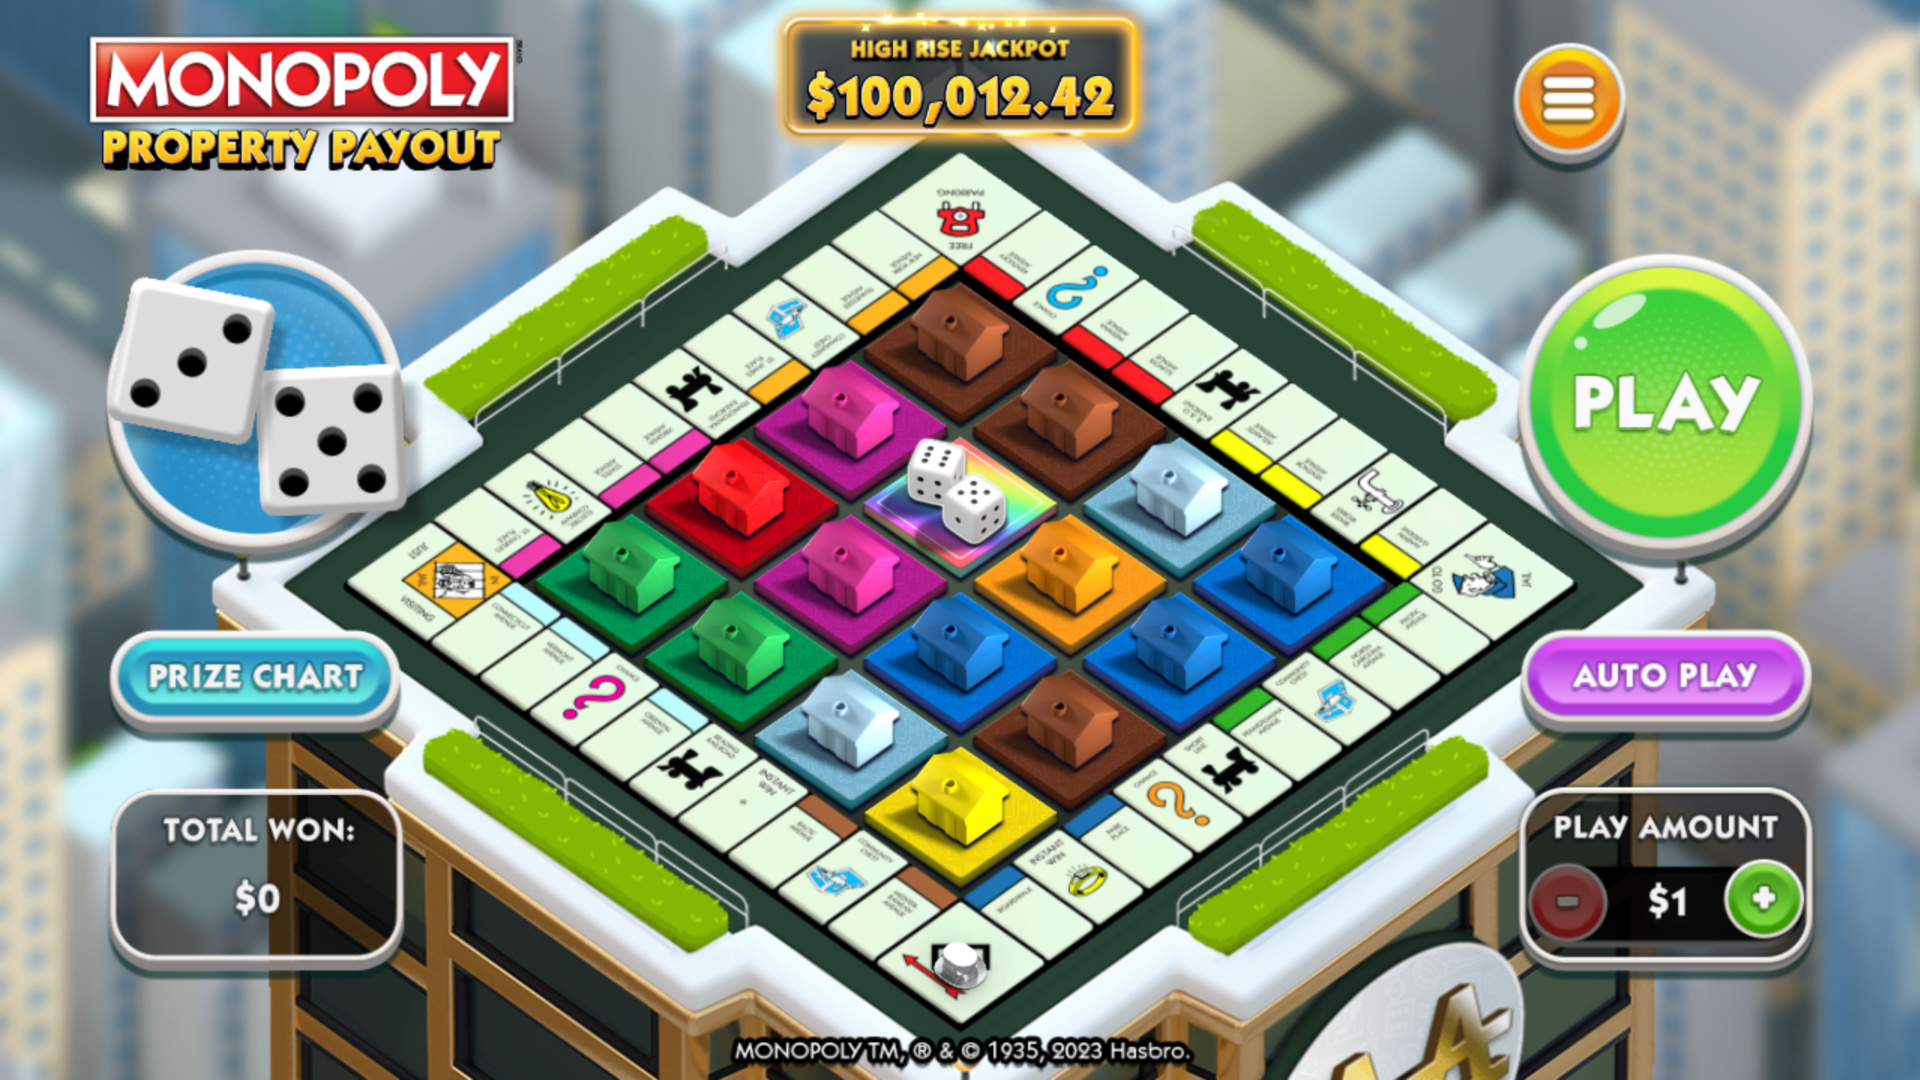 scientific-games-debuts-monopoly-progressive-jackpot-ilottery-game